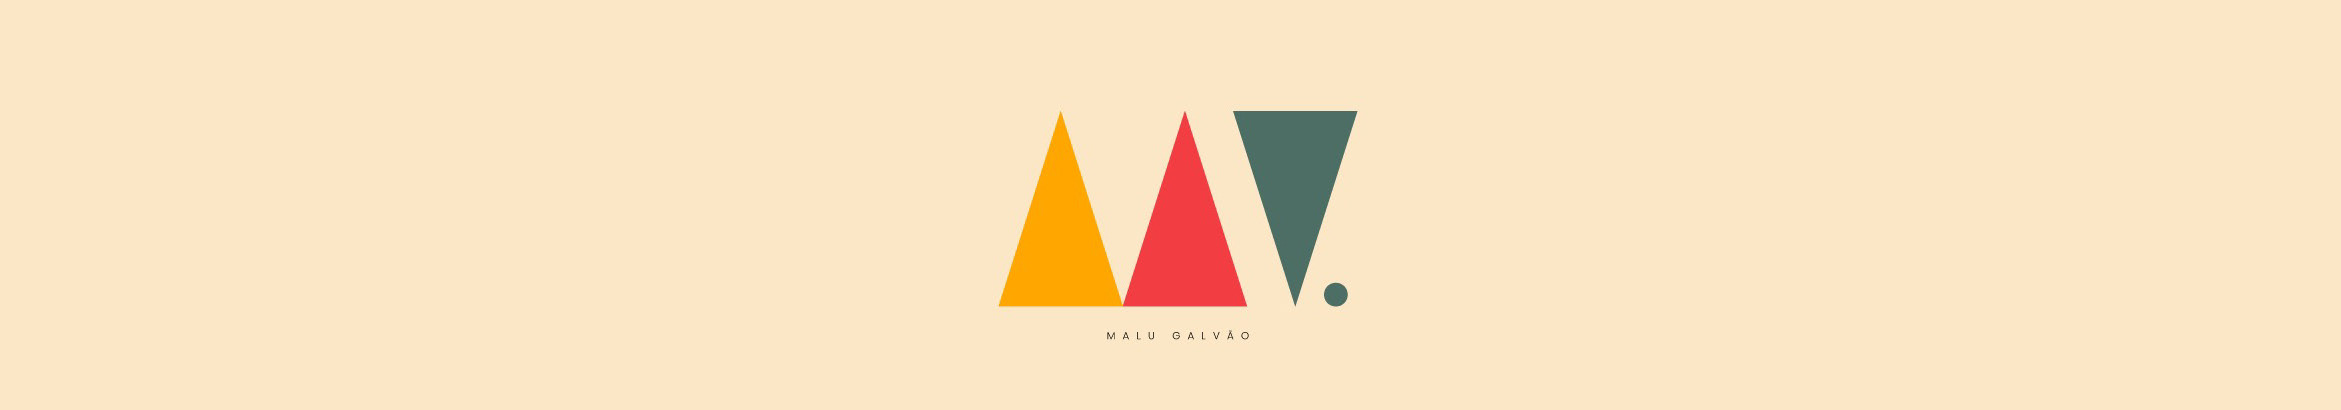 Malu Galvão のプロファイルバナー